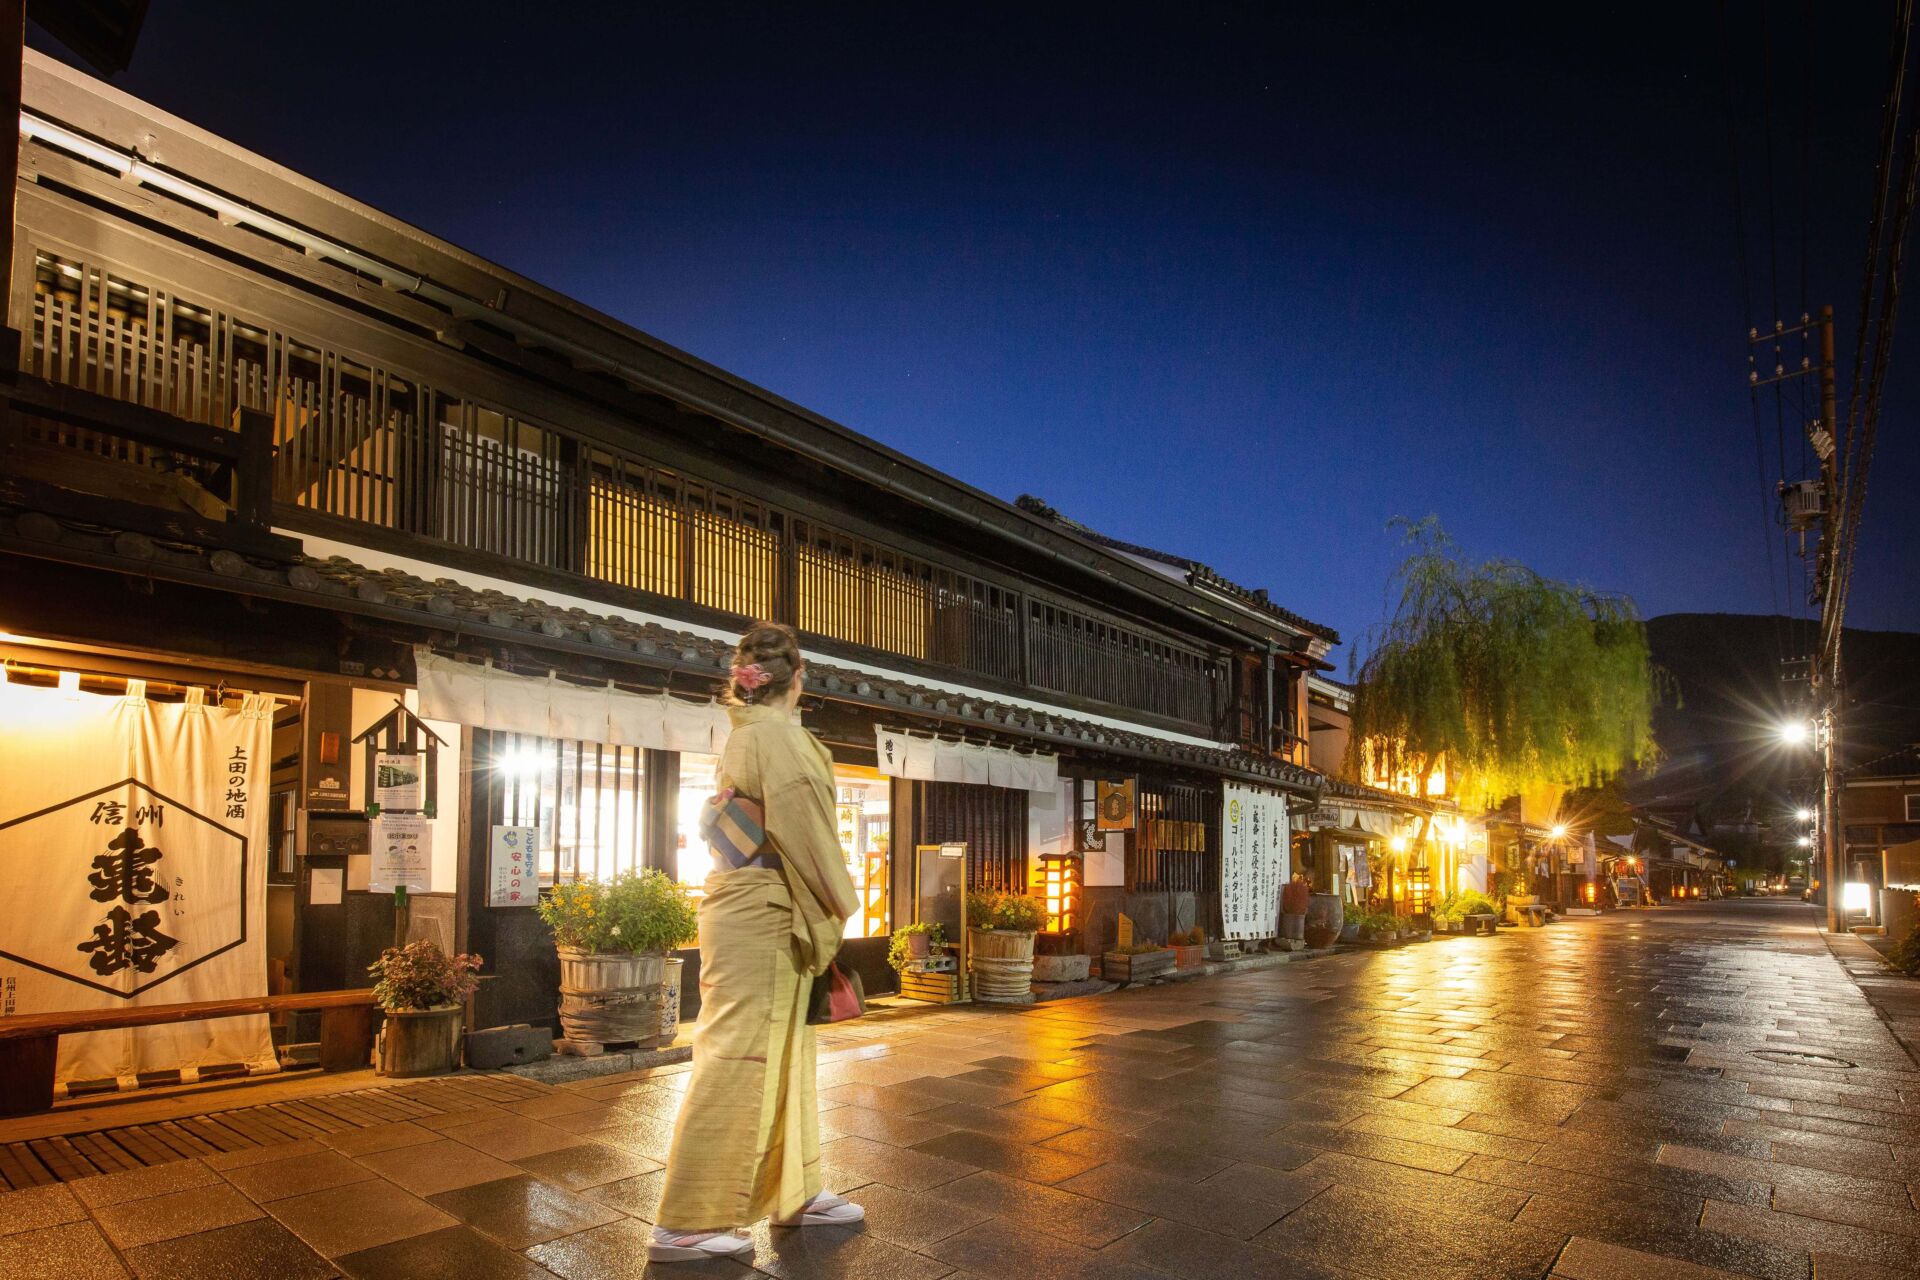 Traditions & Tastes of Ueda